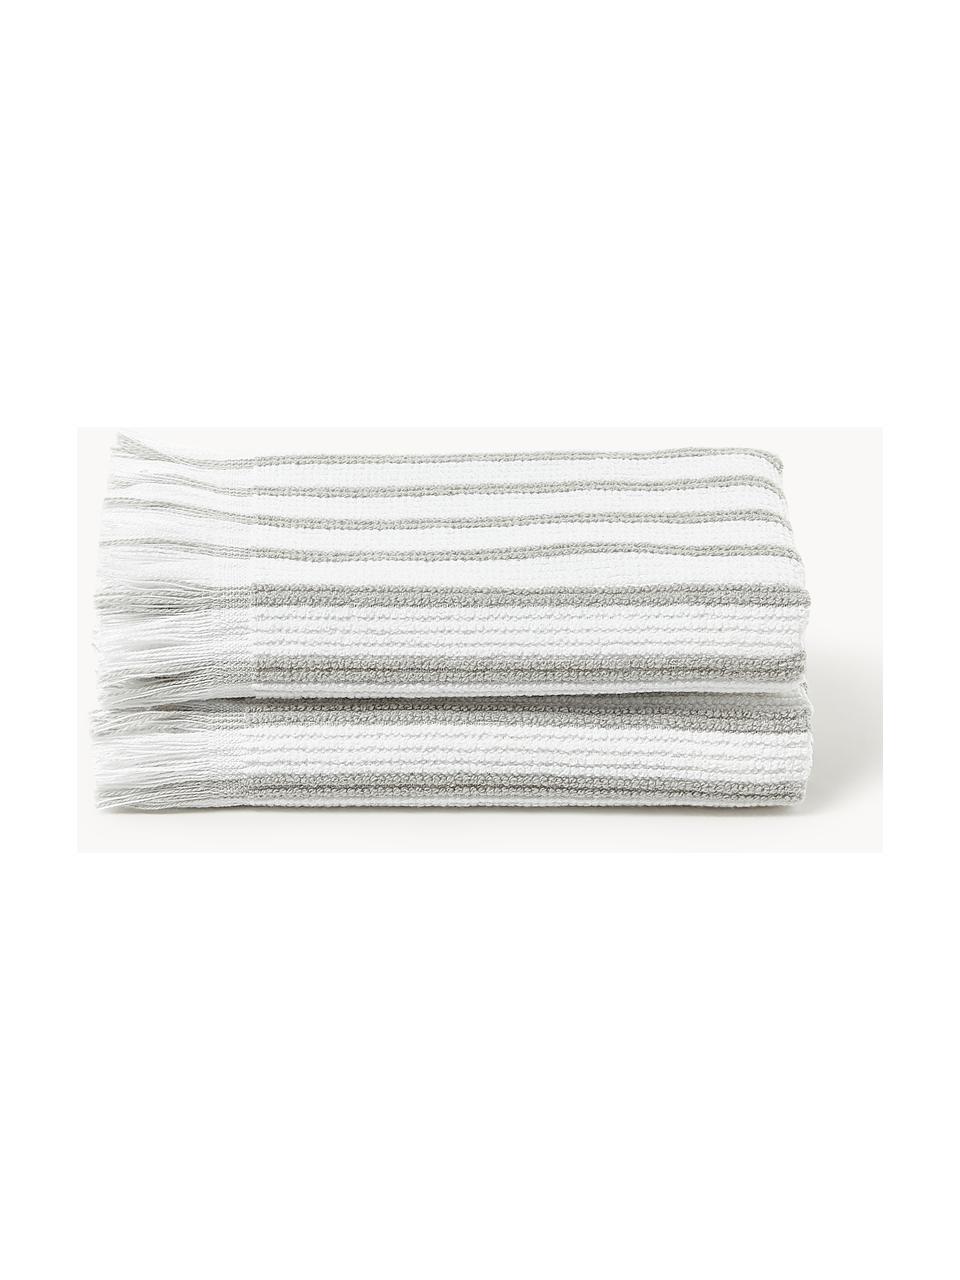 Ręcznik Irma, różne rozmiary, Biały, jasny szary, Ręcznik do rąk, S 50 x D 100 cm, 2 szt.